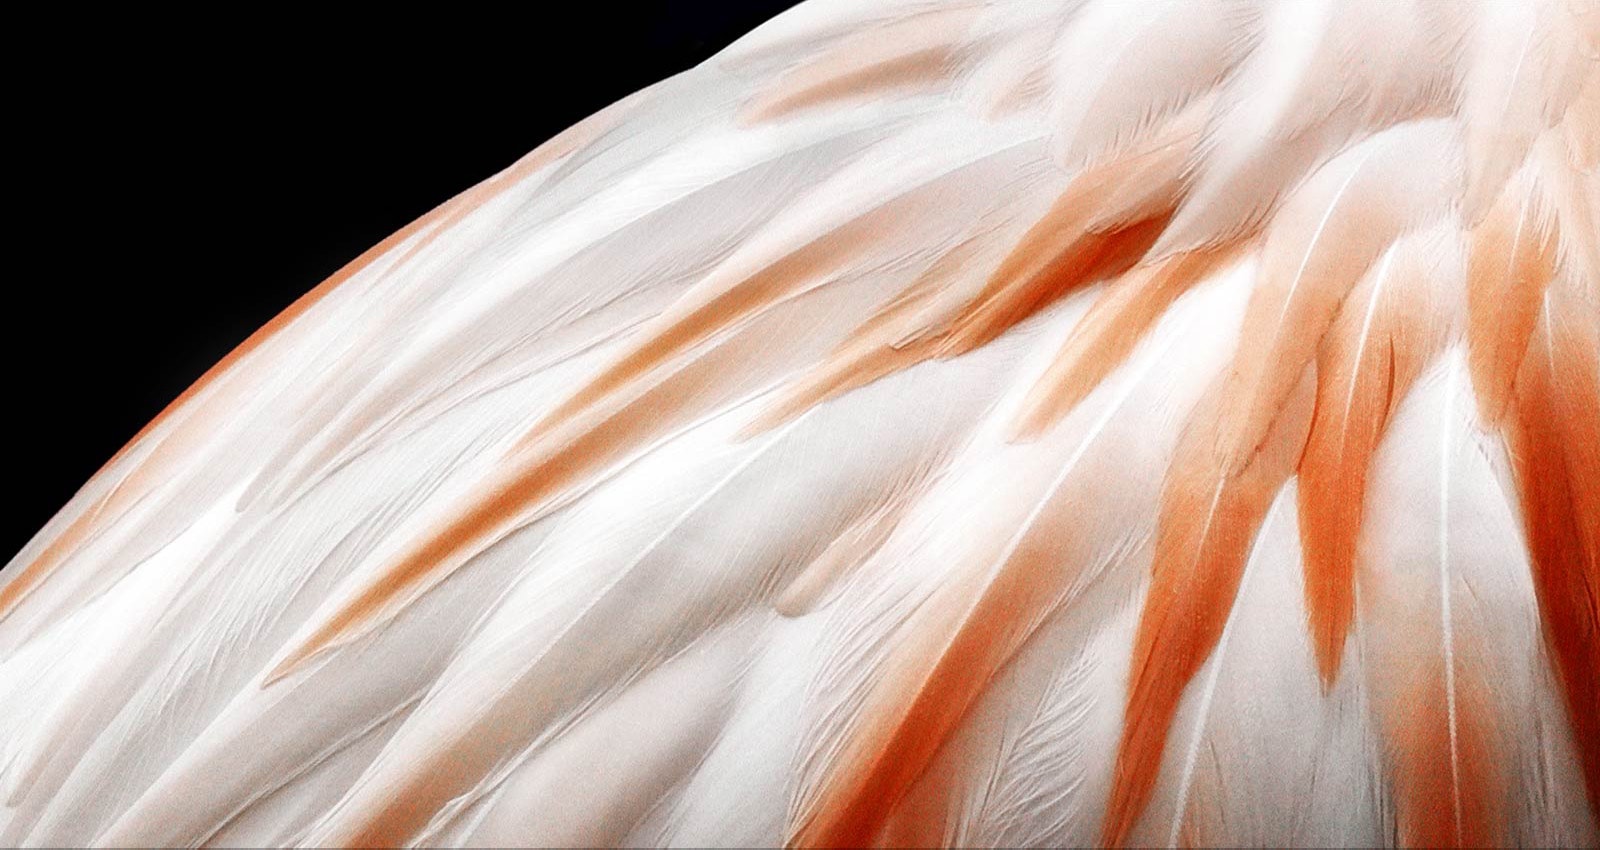 ویدیویی که 2 تصویر از پرهای یک پرنده را در کنار هم نشان می‌دهد. سمتی که بوستر روشنایی را نشان می‌دهد، روشن‌تر به نظر می‌رسد و سپس صفحه نمایش را پر می‌کند. 